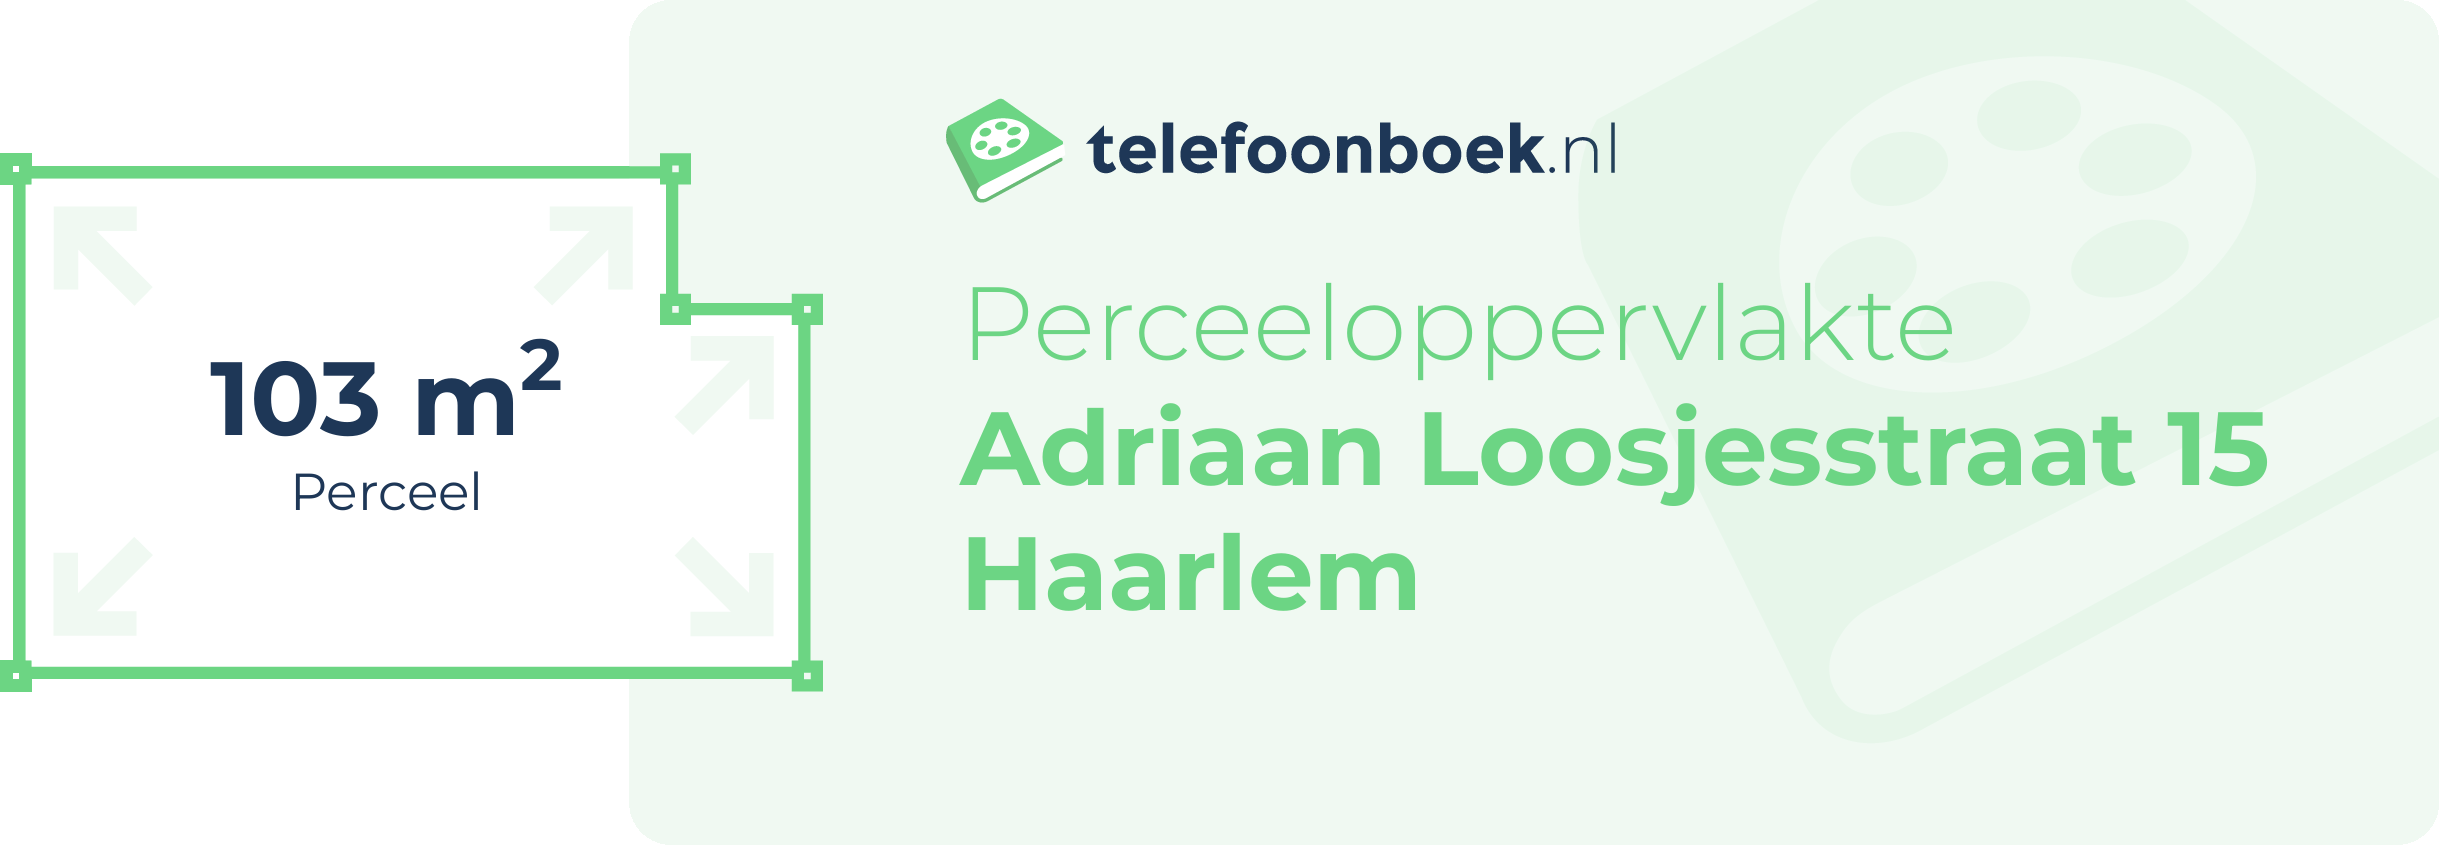 Perceeloppervlakte Adriaan Loosjesstraat 15 Haarlem